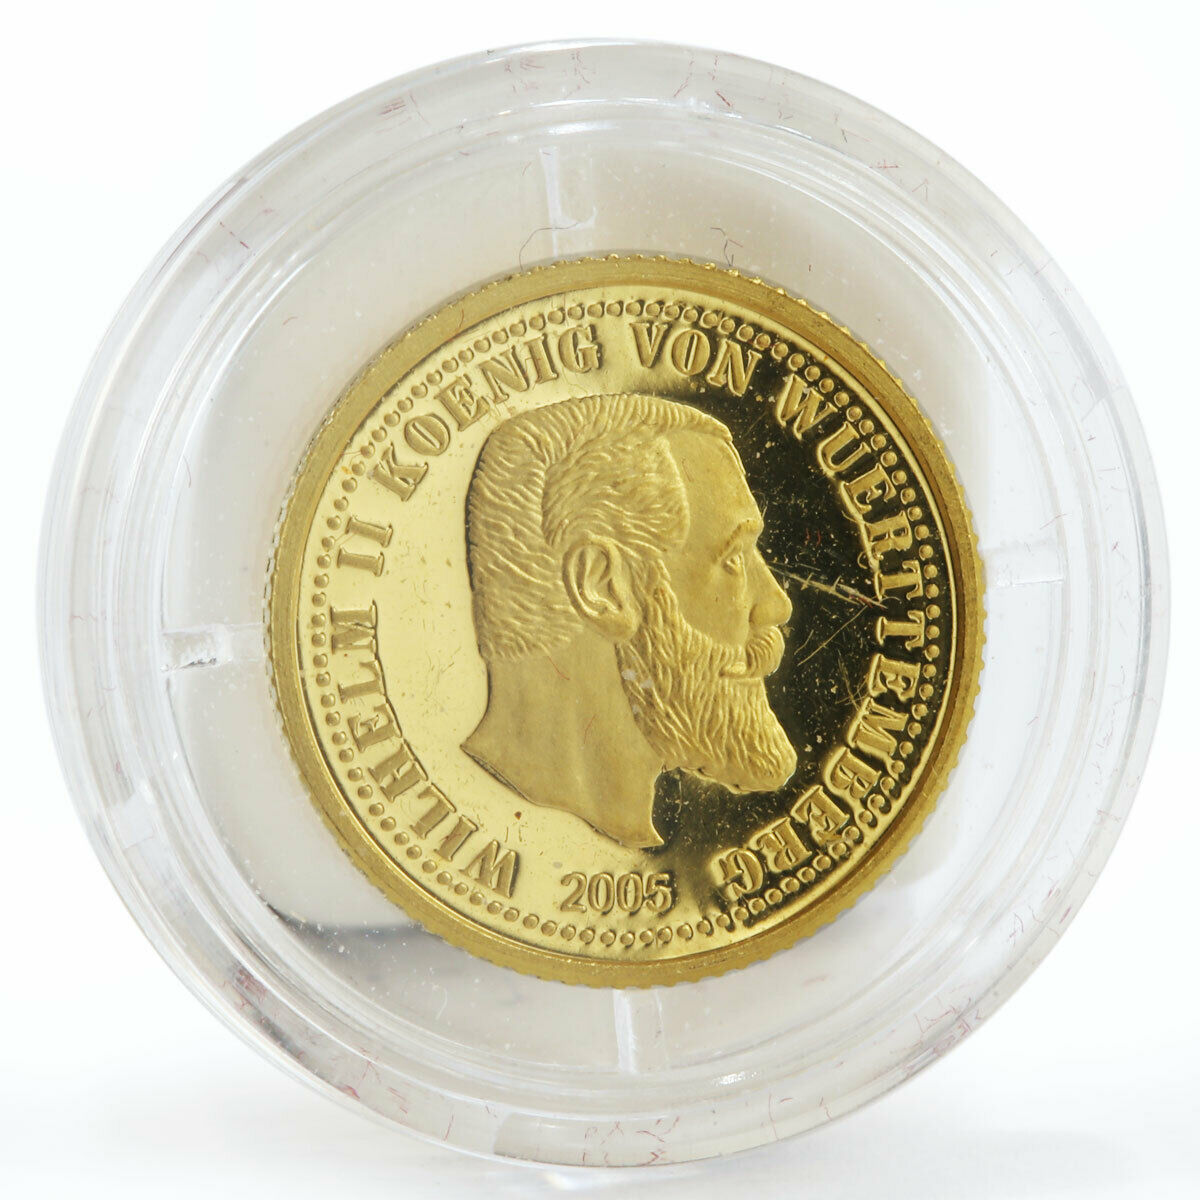 Nothern Mariana Islands 5 dollars Wilhelm II Von Wuerttemberg gold coin 2005